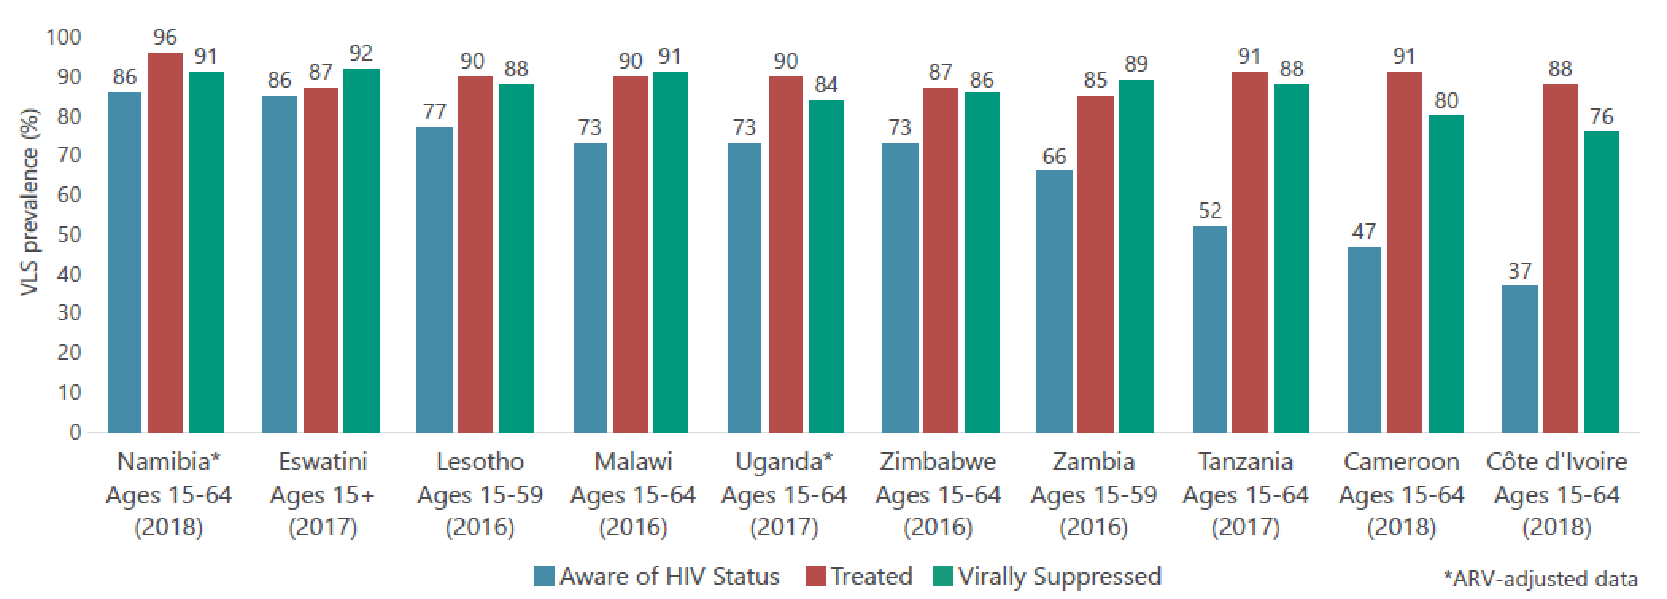 HIV/AIDS statistics in Africa 